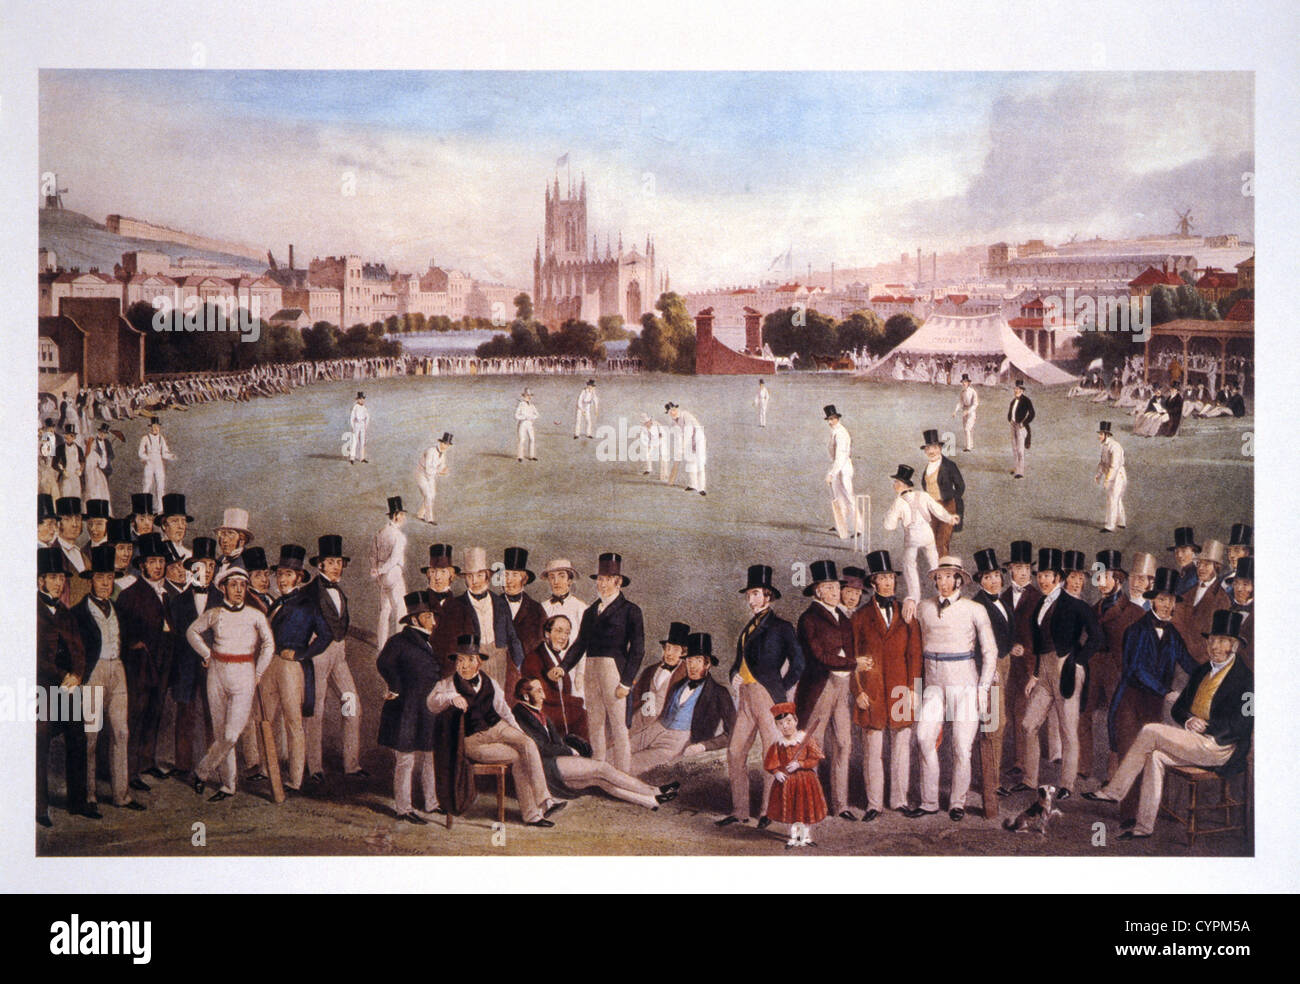 12 и 20 век. Крикет в Англии 19 век. Крикет в Англии 18-19вв. Европа 19 век спорт. Спорт Англия 19 век.